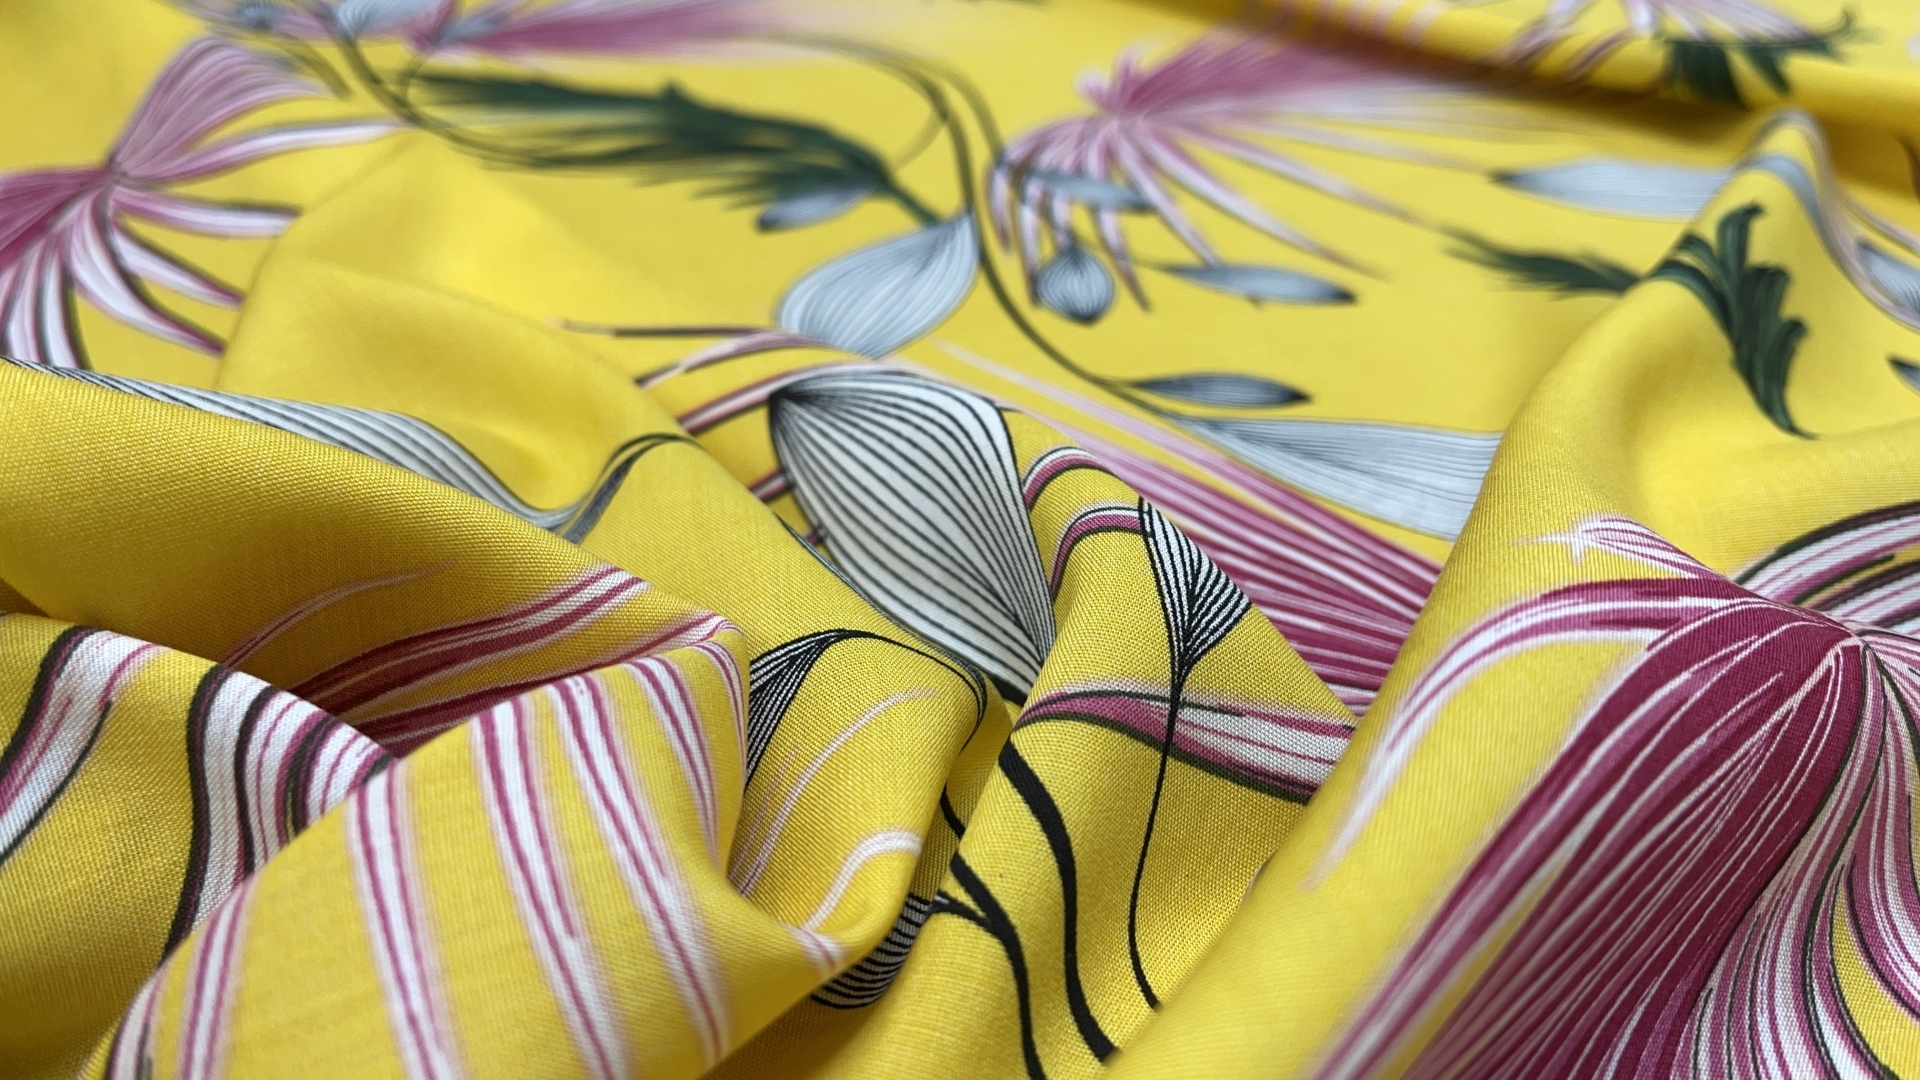 Нежнейший штапель по сниженной стоимости (акция последний рулон). Красивый цветочный принт на желтом фоне, идеально для рубашки и летнего платья или сарафана с оборками.